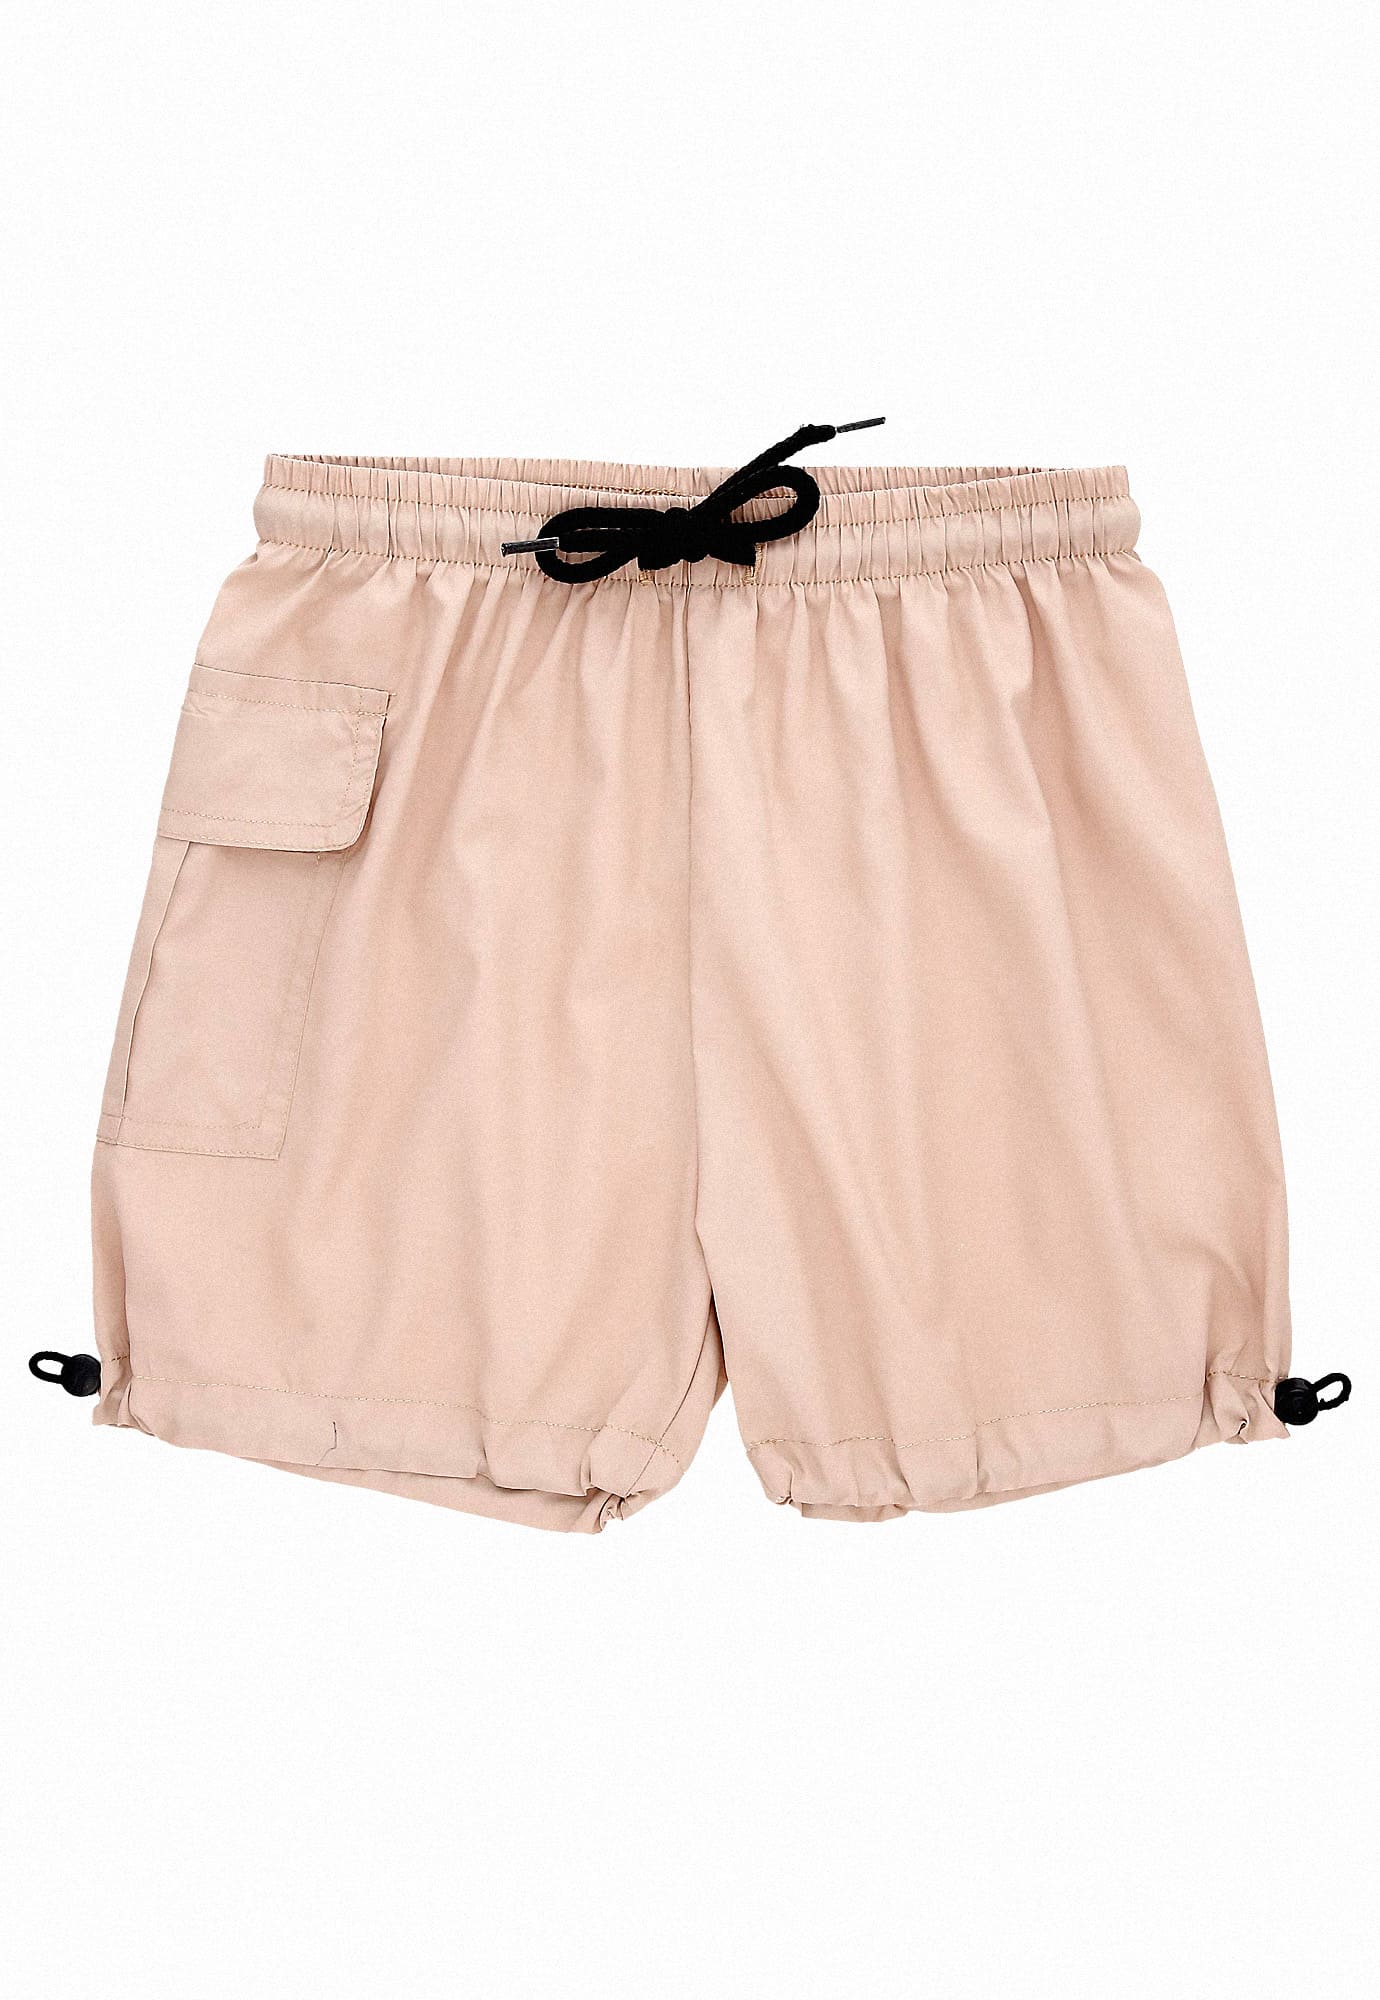 Bermuda arena fondo entero, con bolsillos laterales, cintura elástica, bota con elástico y tanca para bebé niño